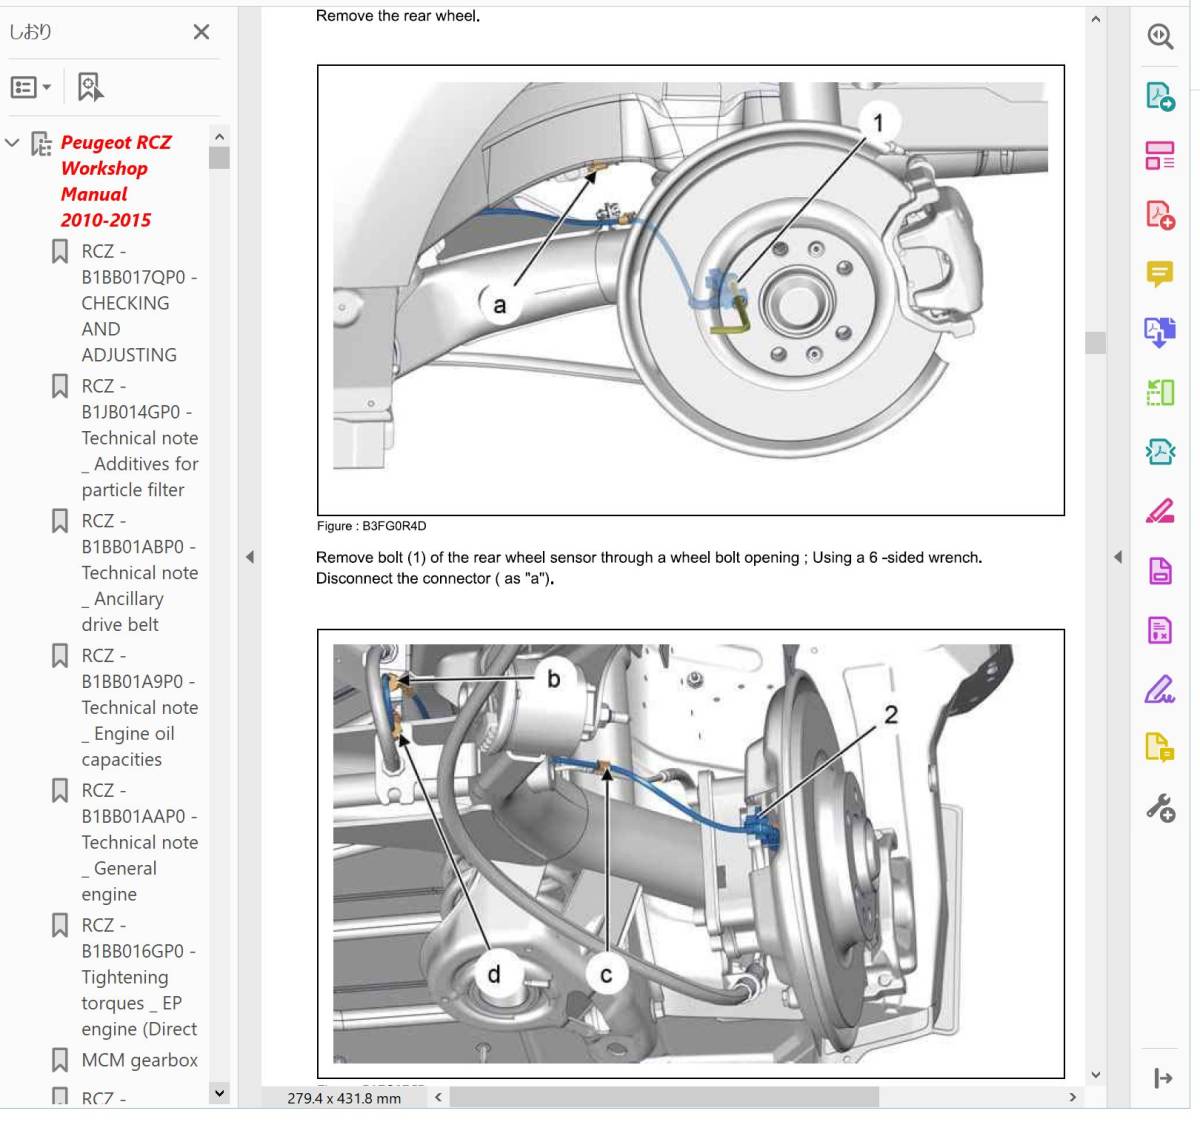 プジョー RCZ 2010-2015 ファクトリーワークショップマニュアル 修理書 整備書 Peugeot の画像5